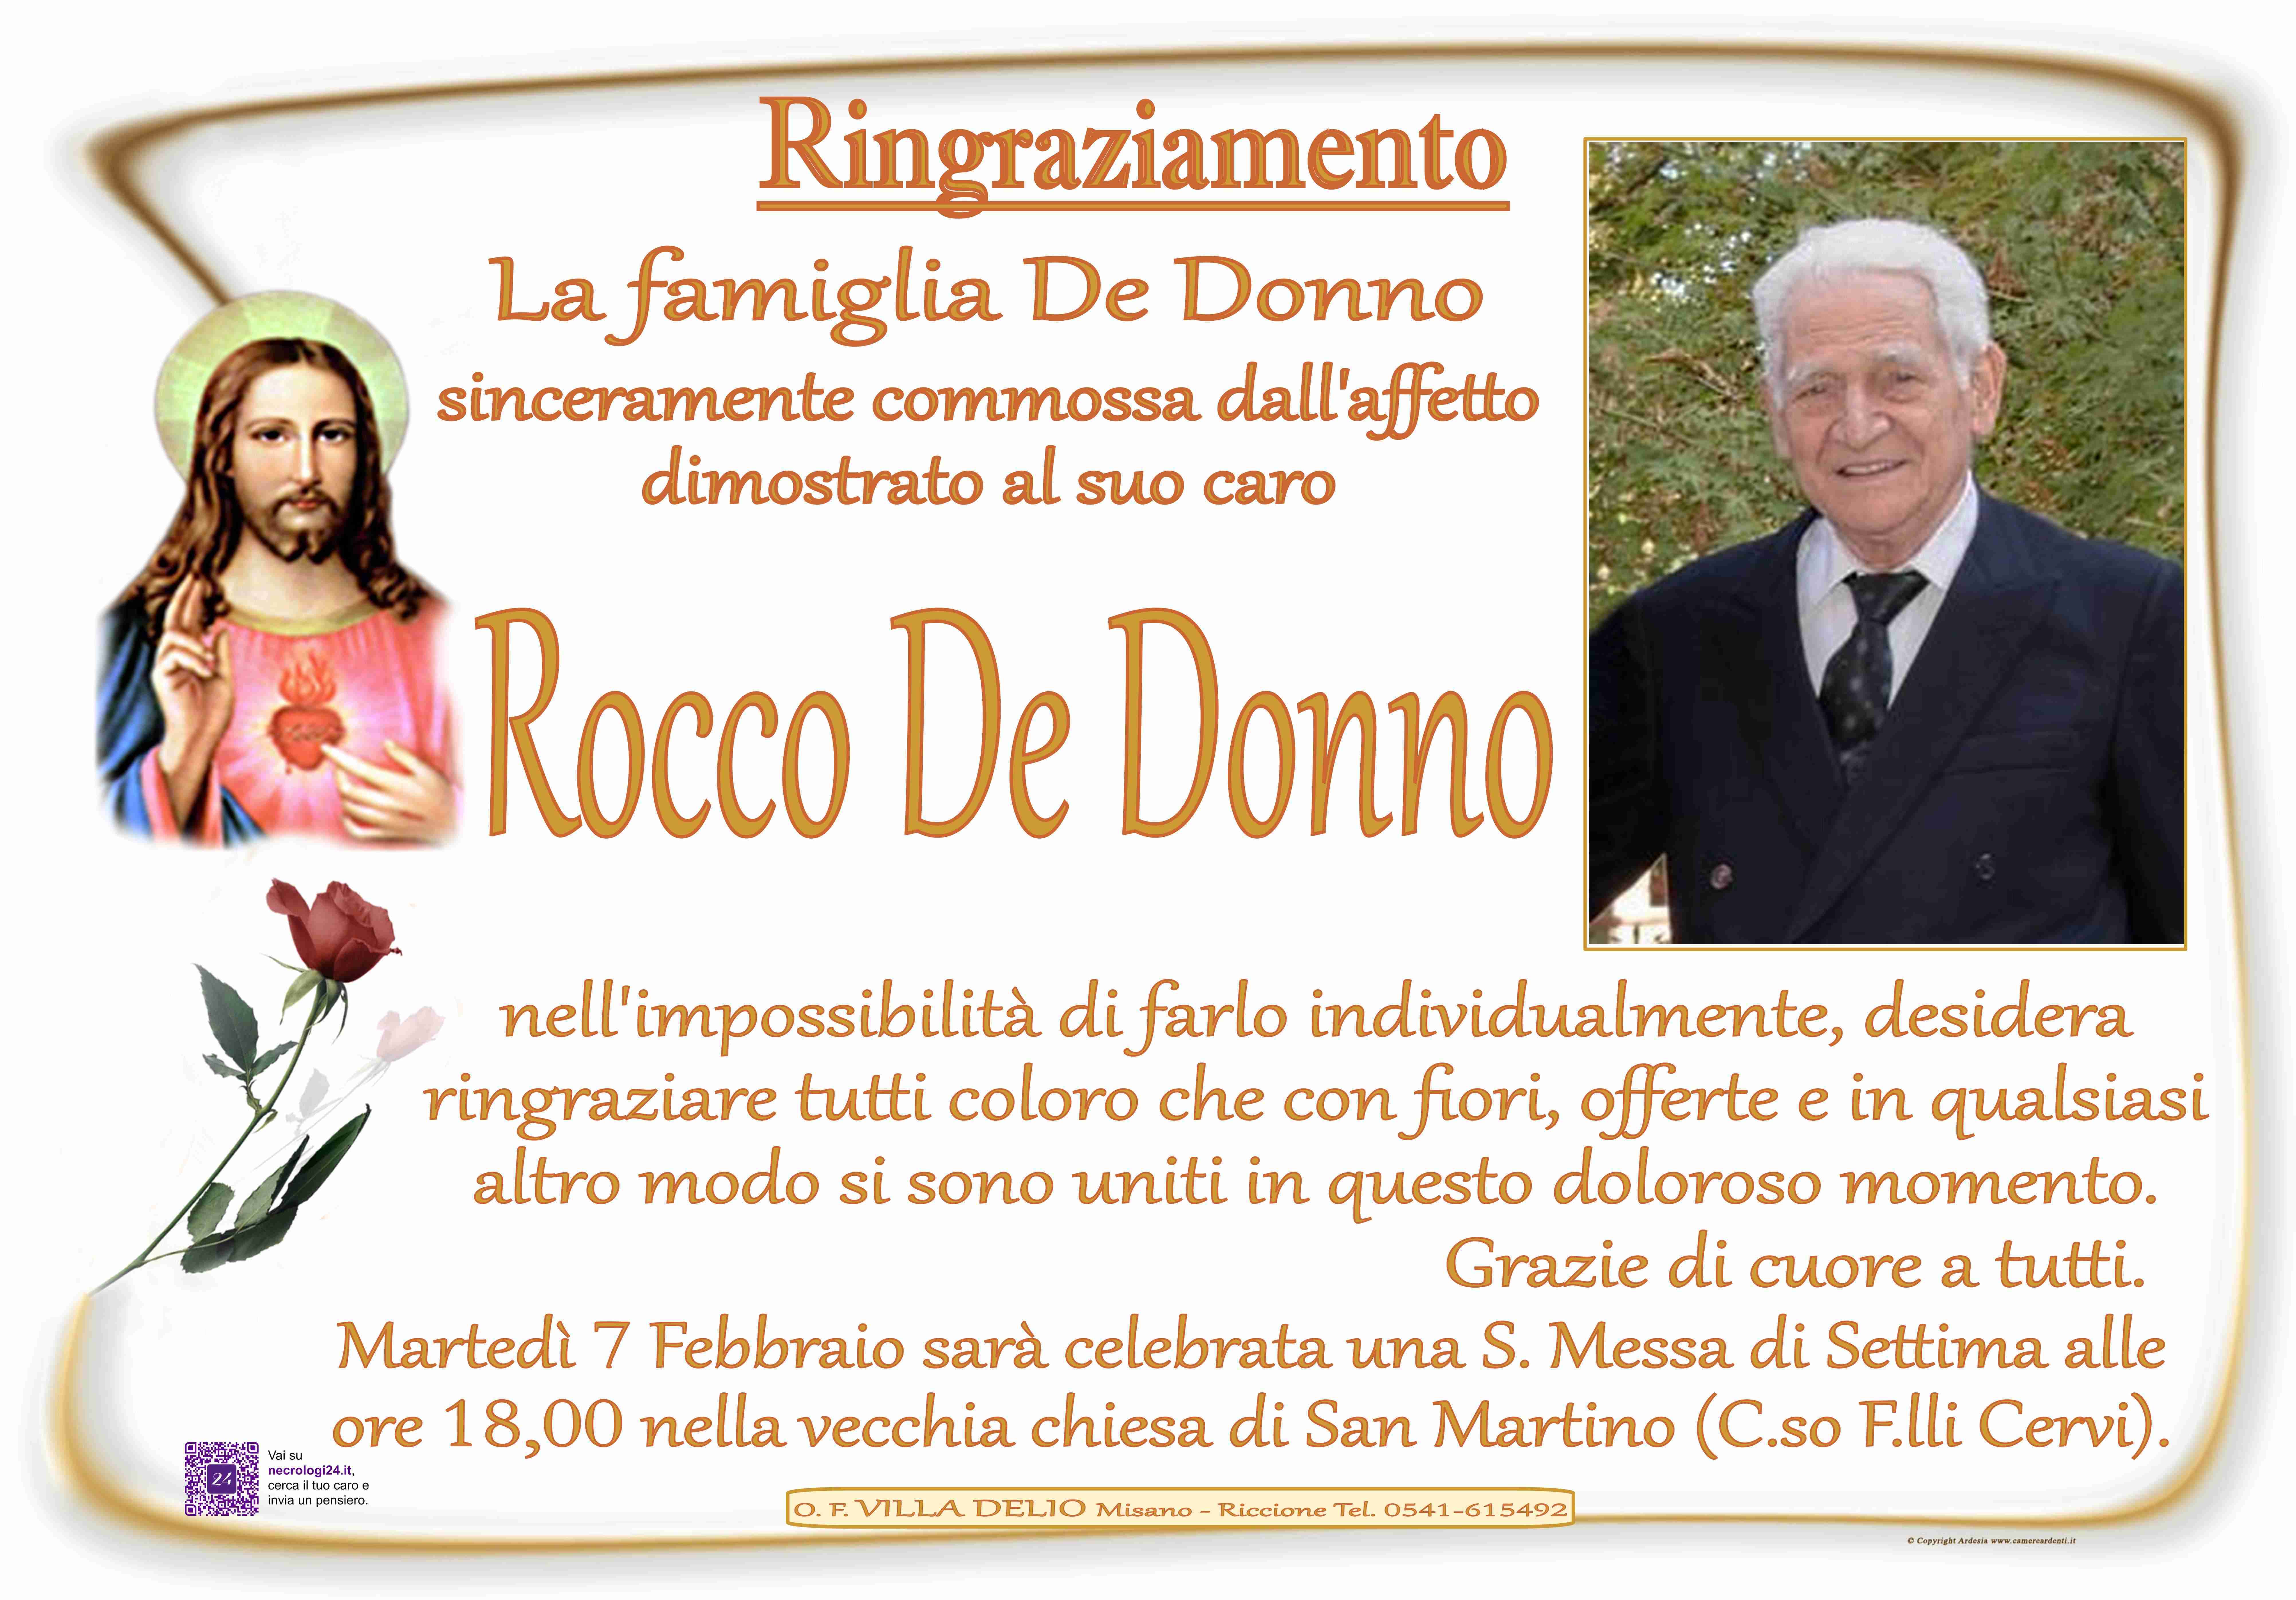 Rocco De Donno